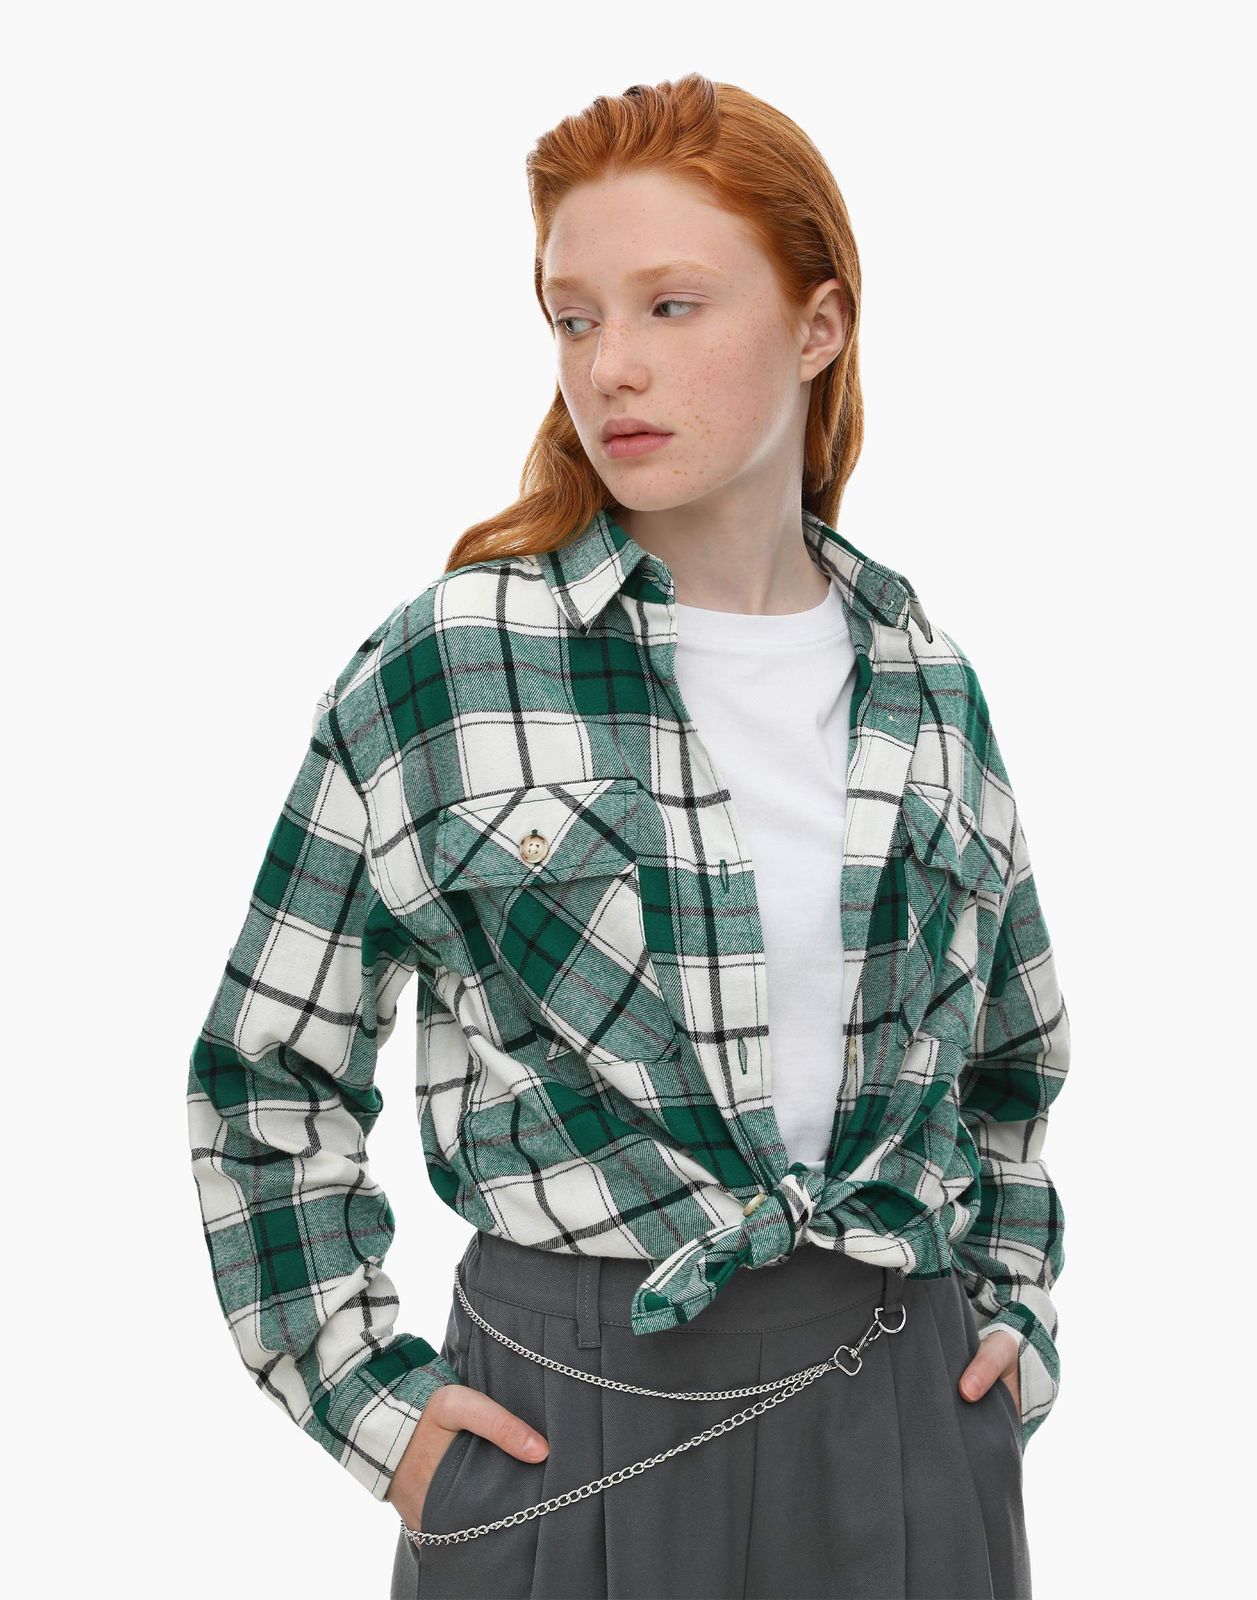 Рубашка детская Gloria Jeans GWT003260, зеленый/разноцветный, 146